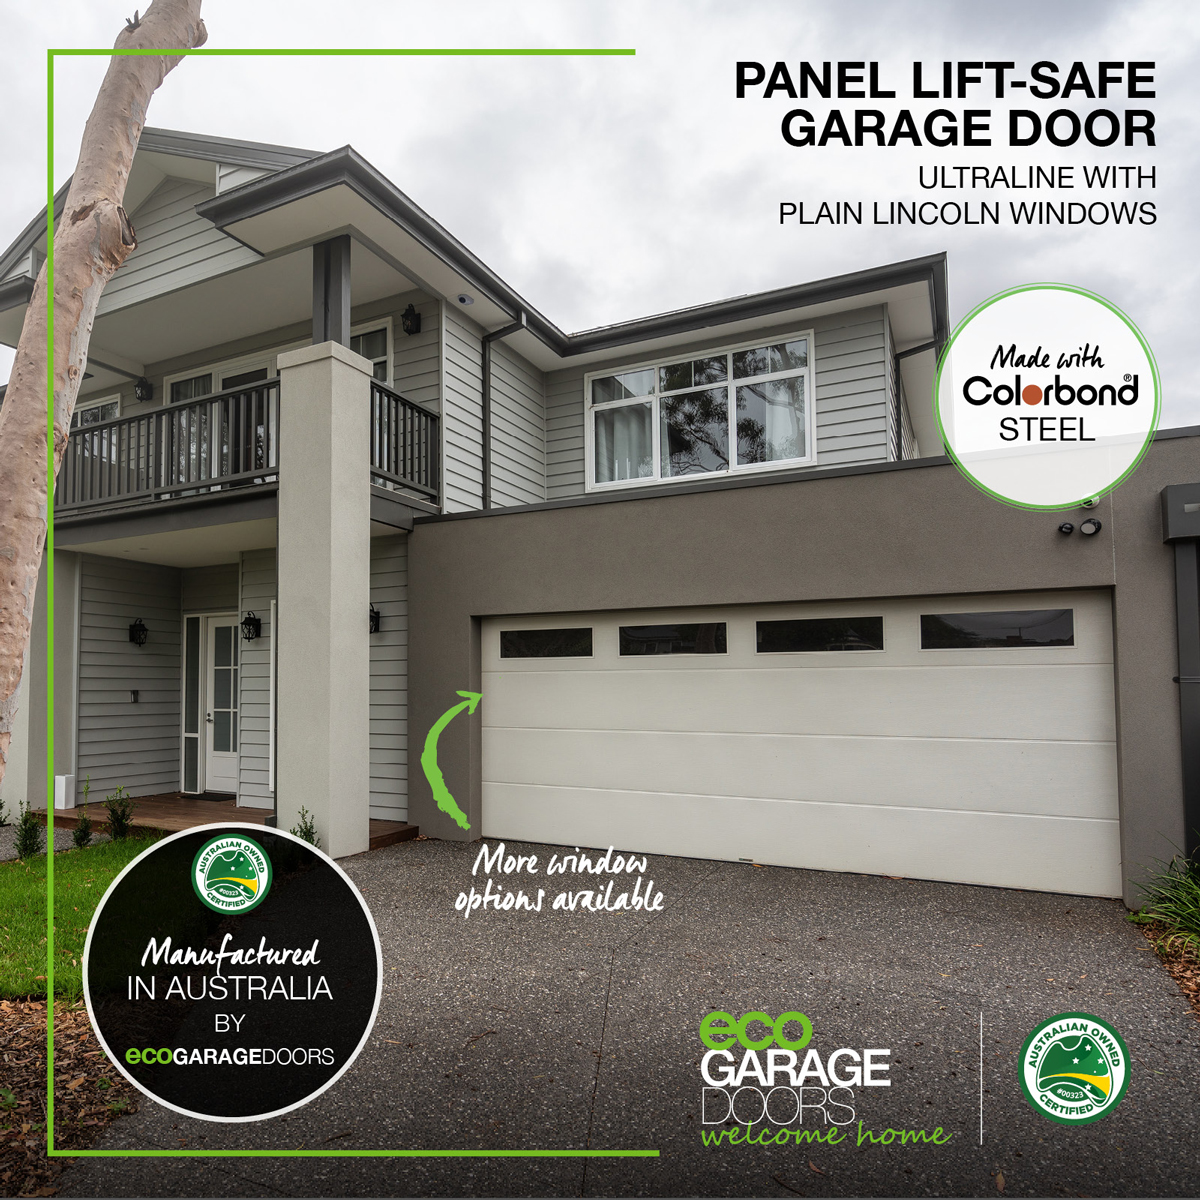 Panel lift-safe garage doors